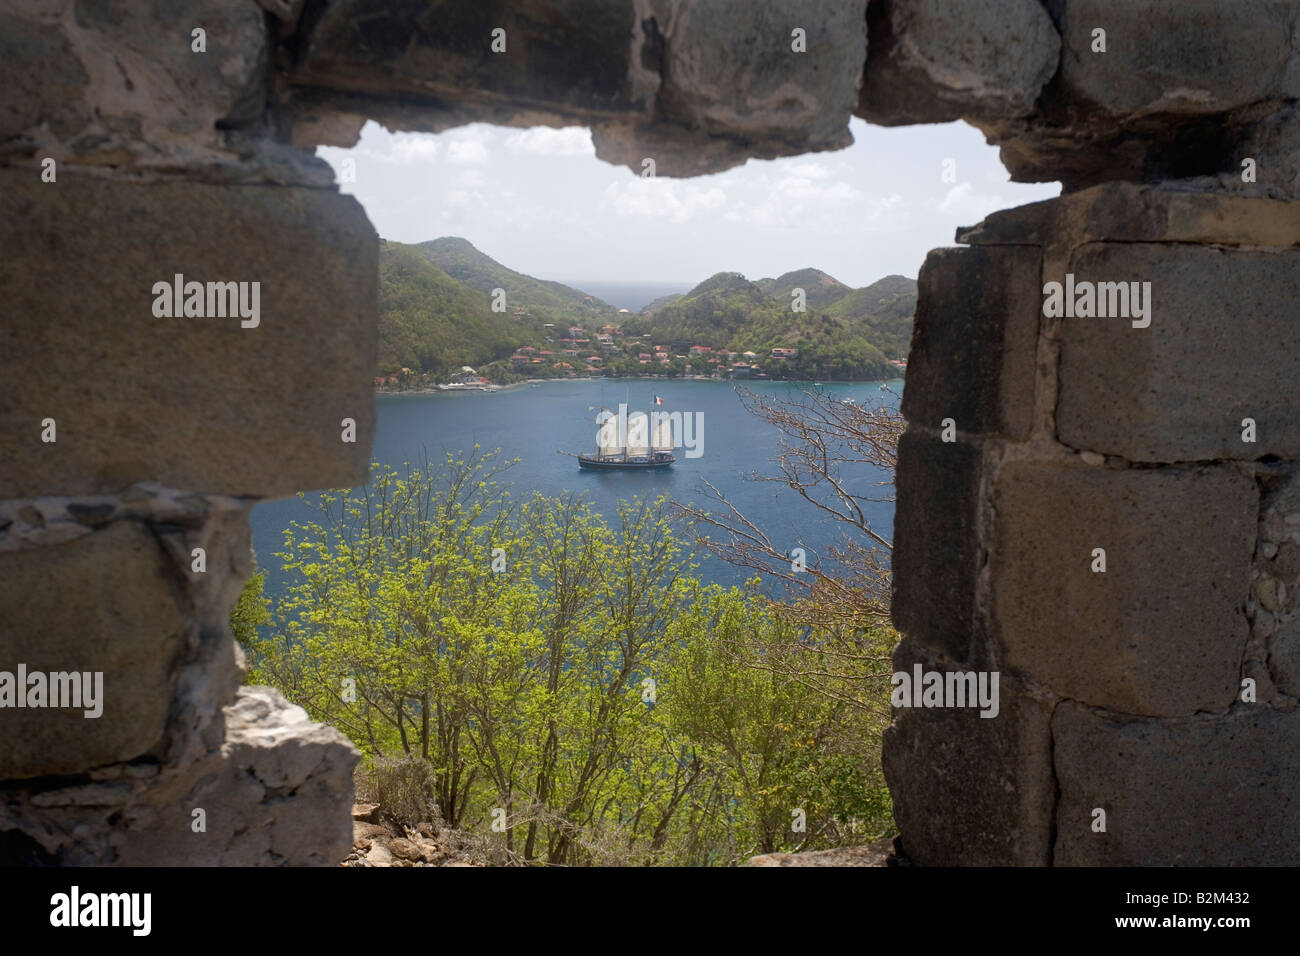 Ein 3 Mast Gaffel getakelt Schiff Segel von Bourg de Saintes auf der Insel von Terre D En Haut in der Inselgruppe Iles des Sain genannt Stockfoto